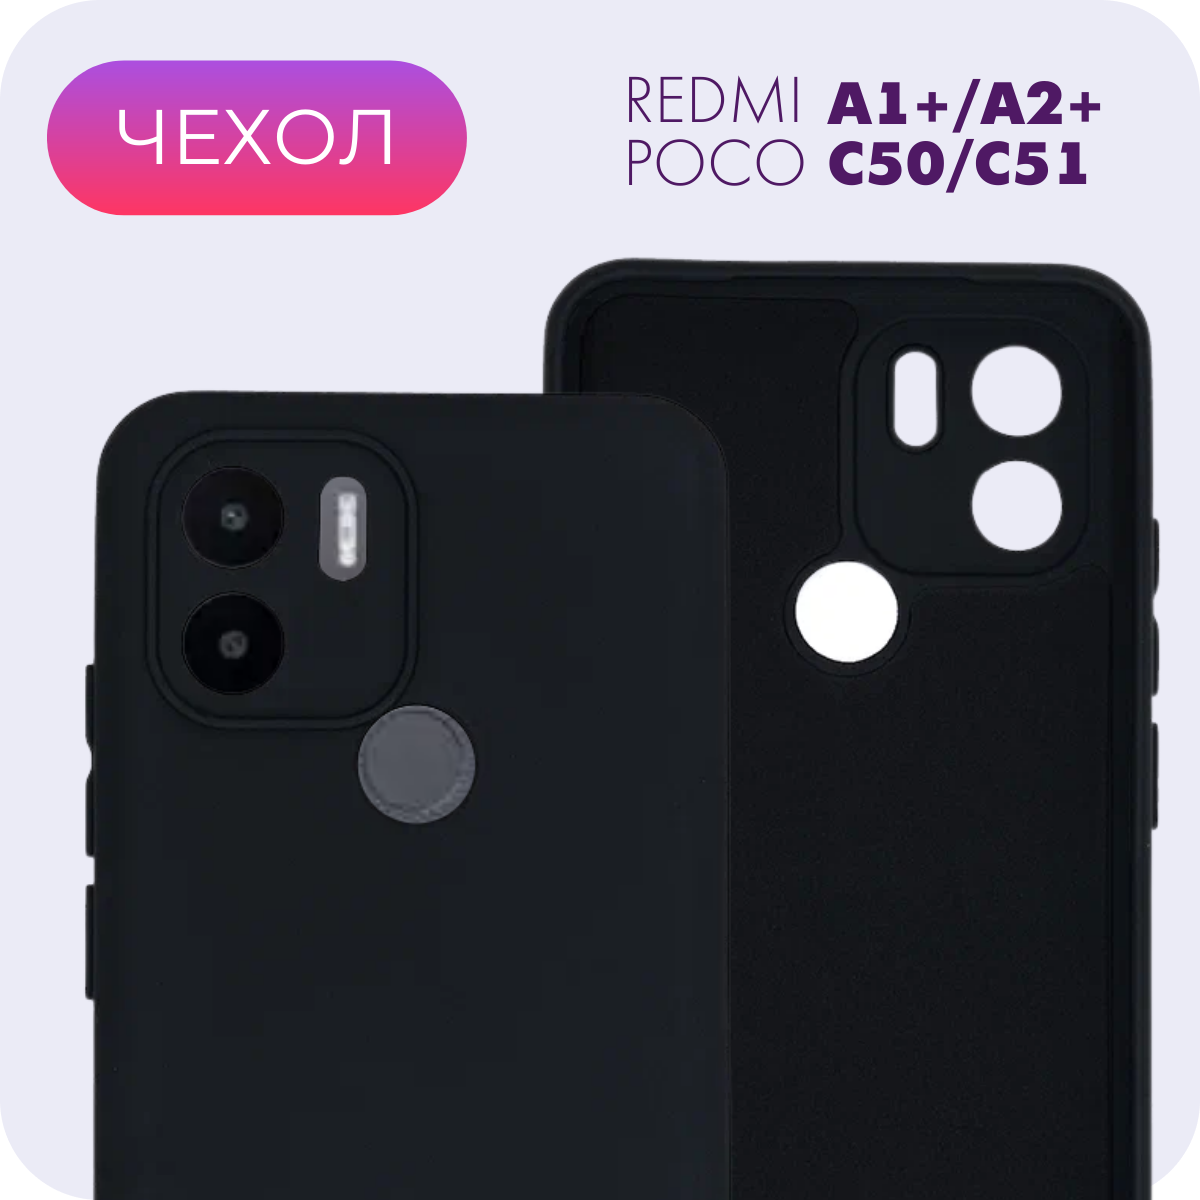 Противоударный матовый чехол с защитой камеры №24 Silicone Case для Xiaomi Redmi A1+/A2+/Poco C50/C51 (Ксиоми Редми А1+/А2+/Поко Ц50/Ц51)